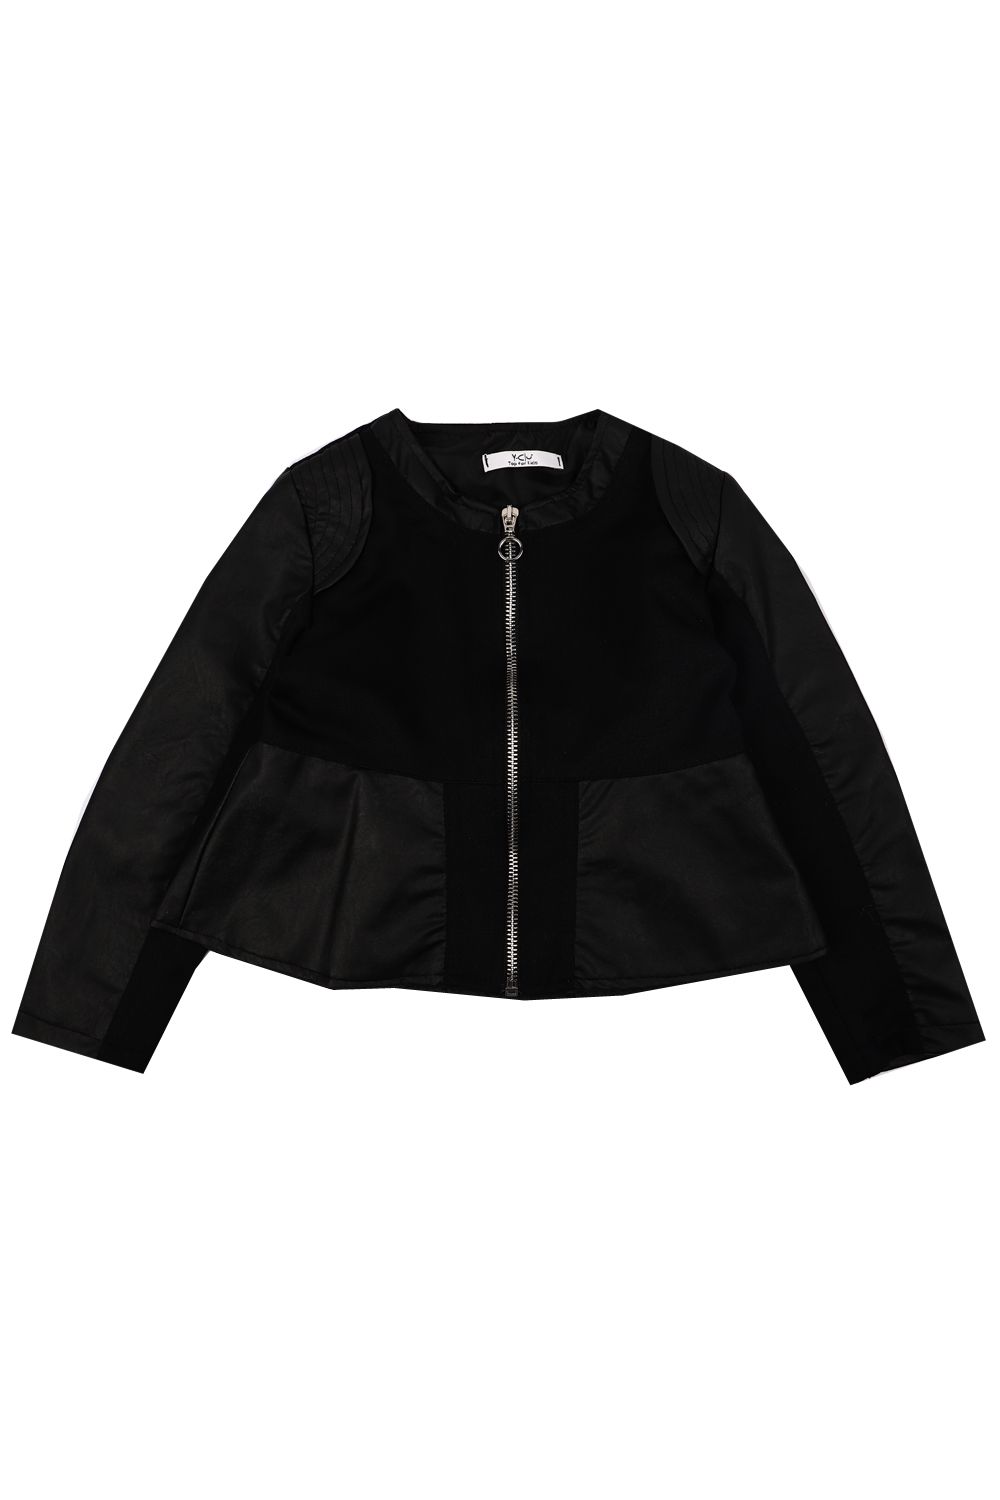 Куртка Y-clu', размер 104, цвет черный YB12660 - фото 1